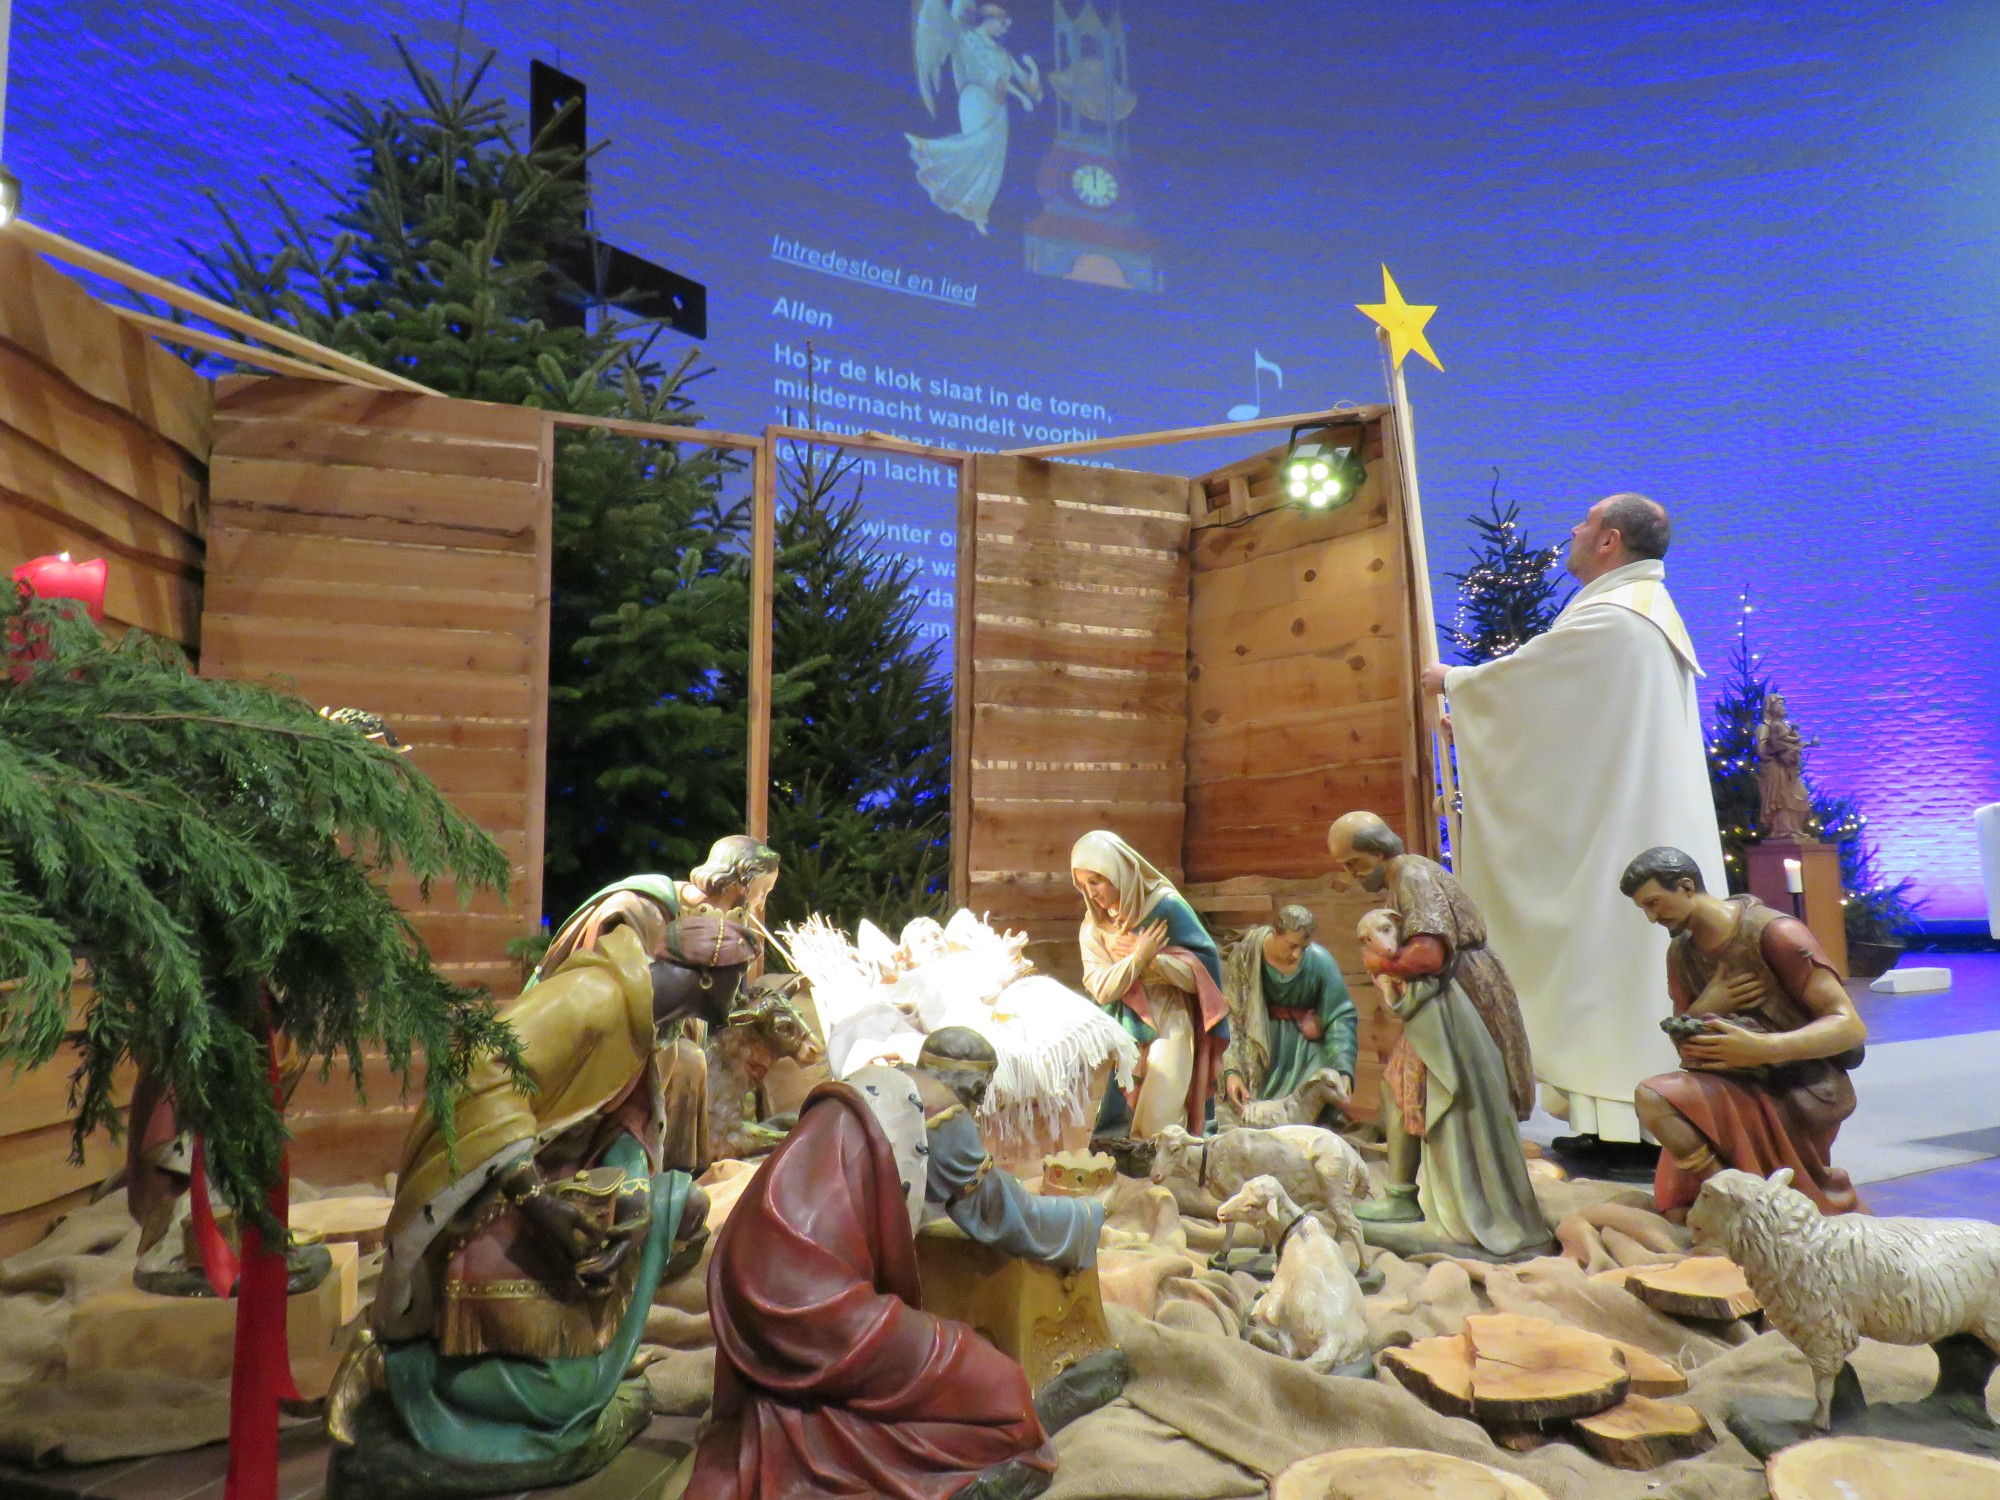 Herman, met de ster, plaats ze aan de kerststal in de kerk